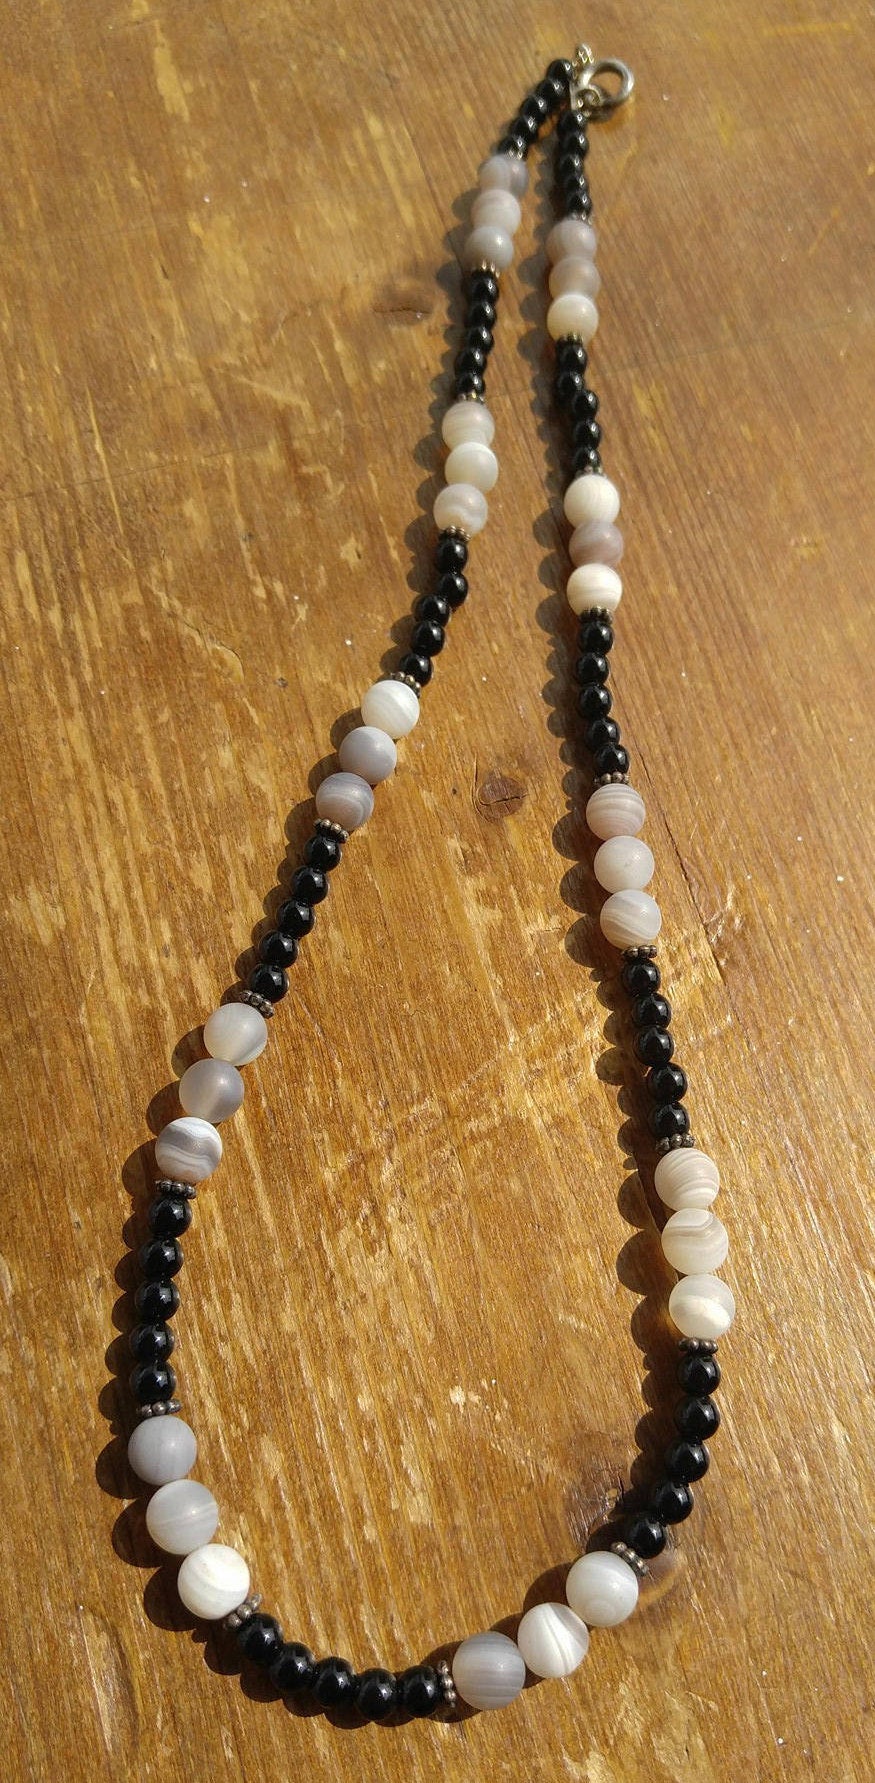 botswana agate necklace